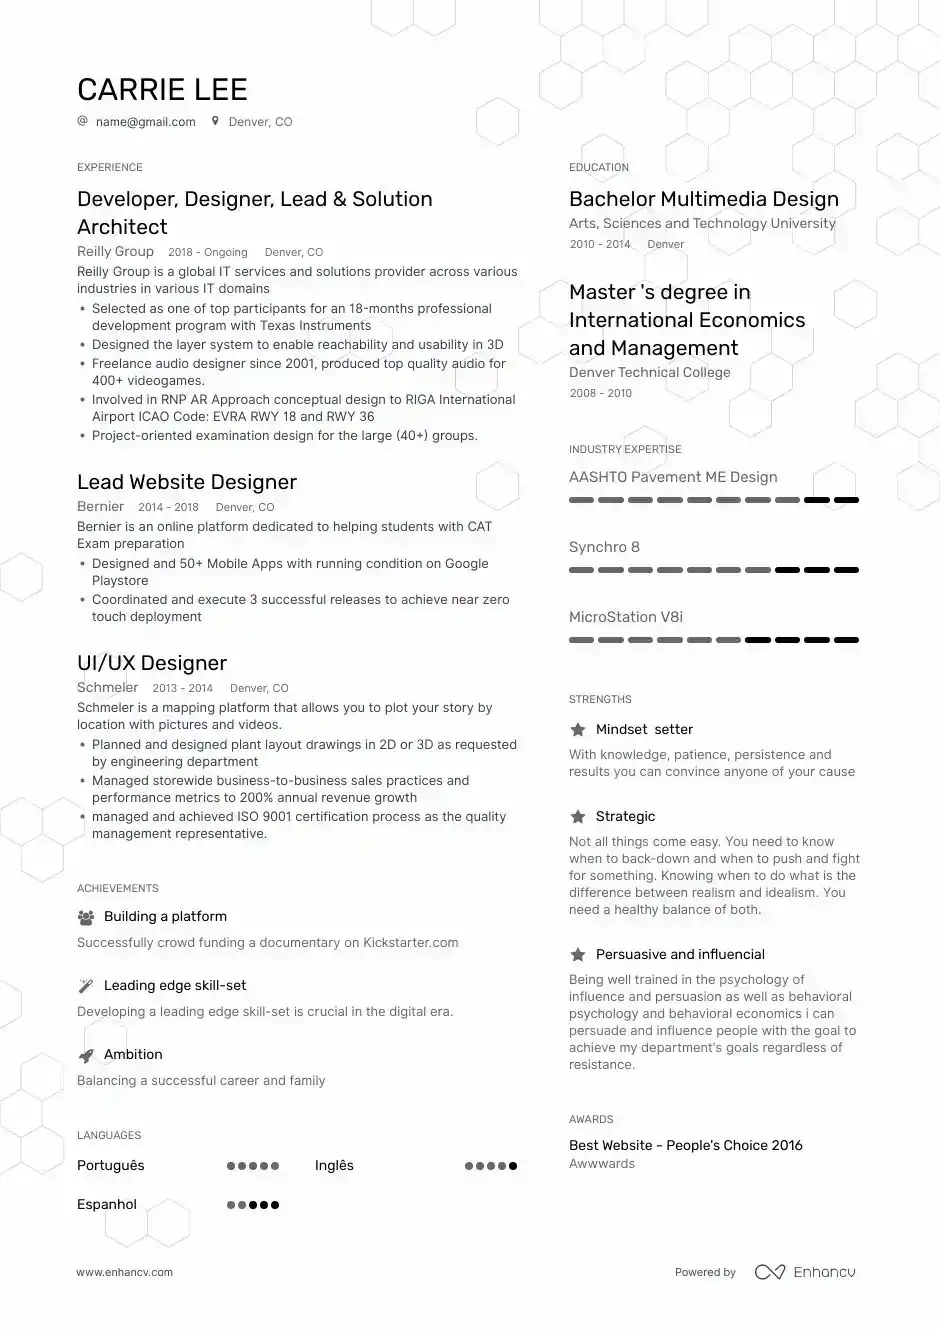 Designer resume